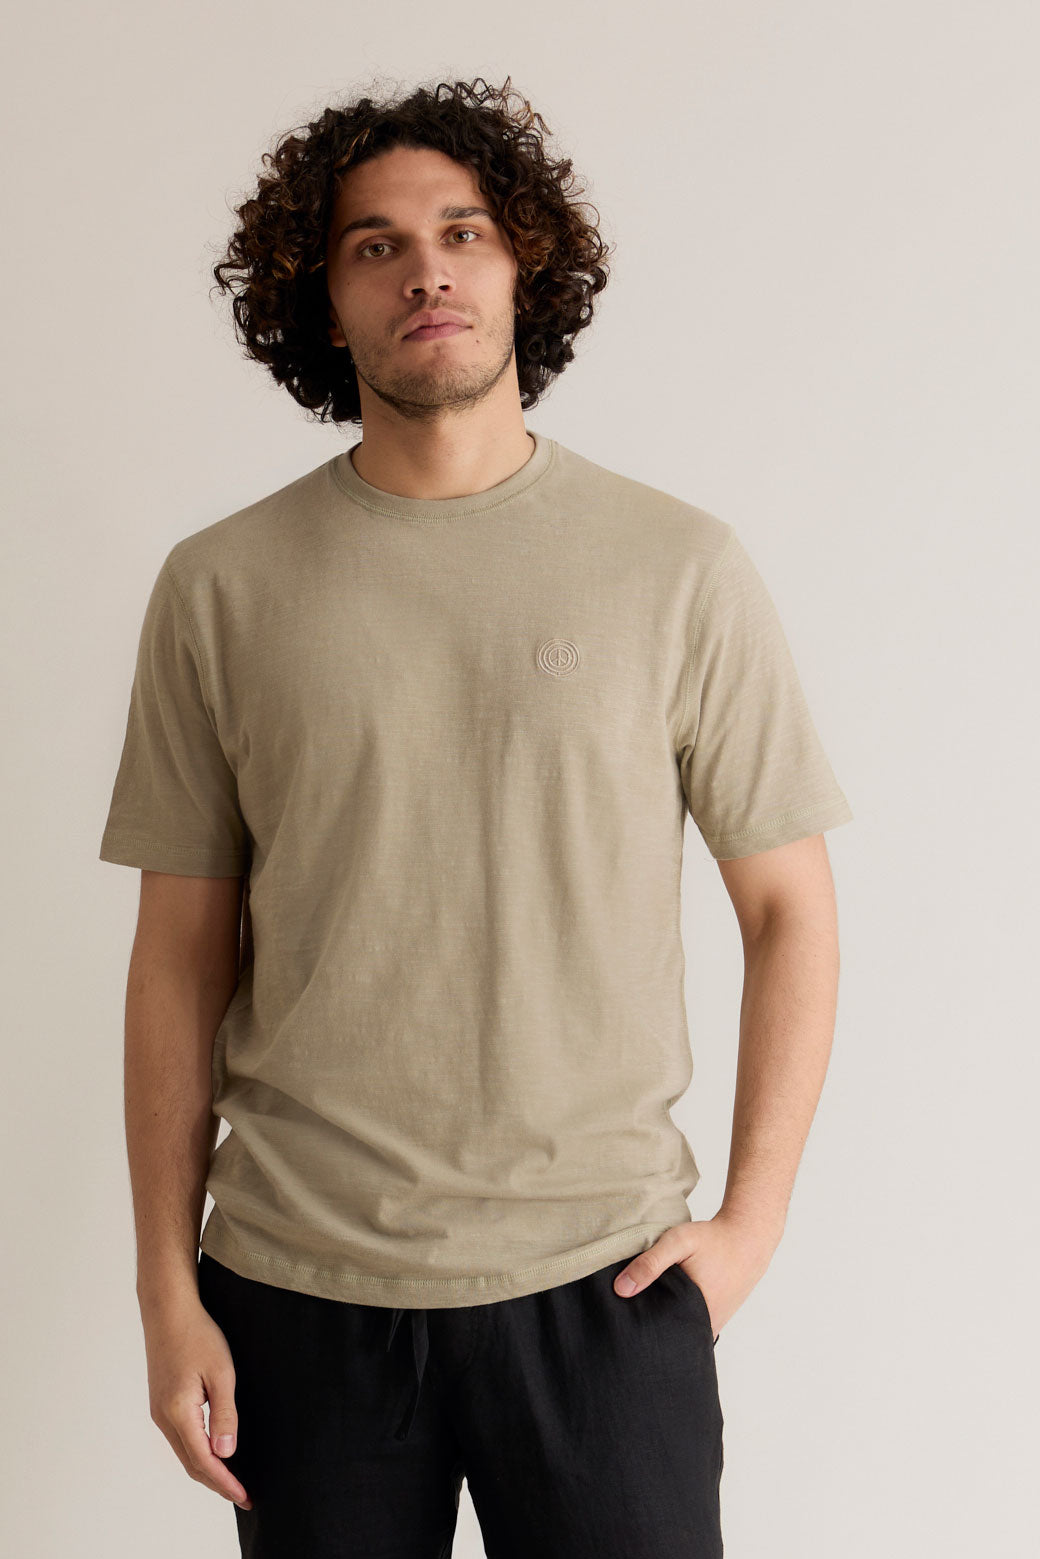 Graues Shirt Kin aus 100% Bio-Baumwolle von Komodo